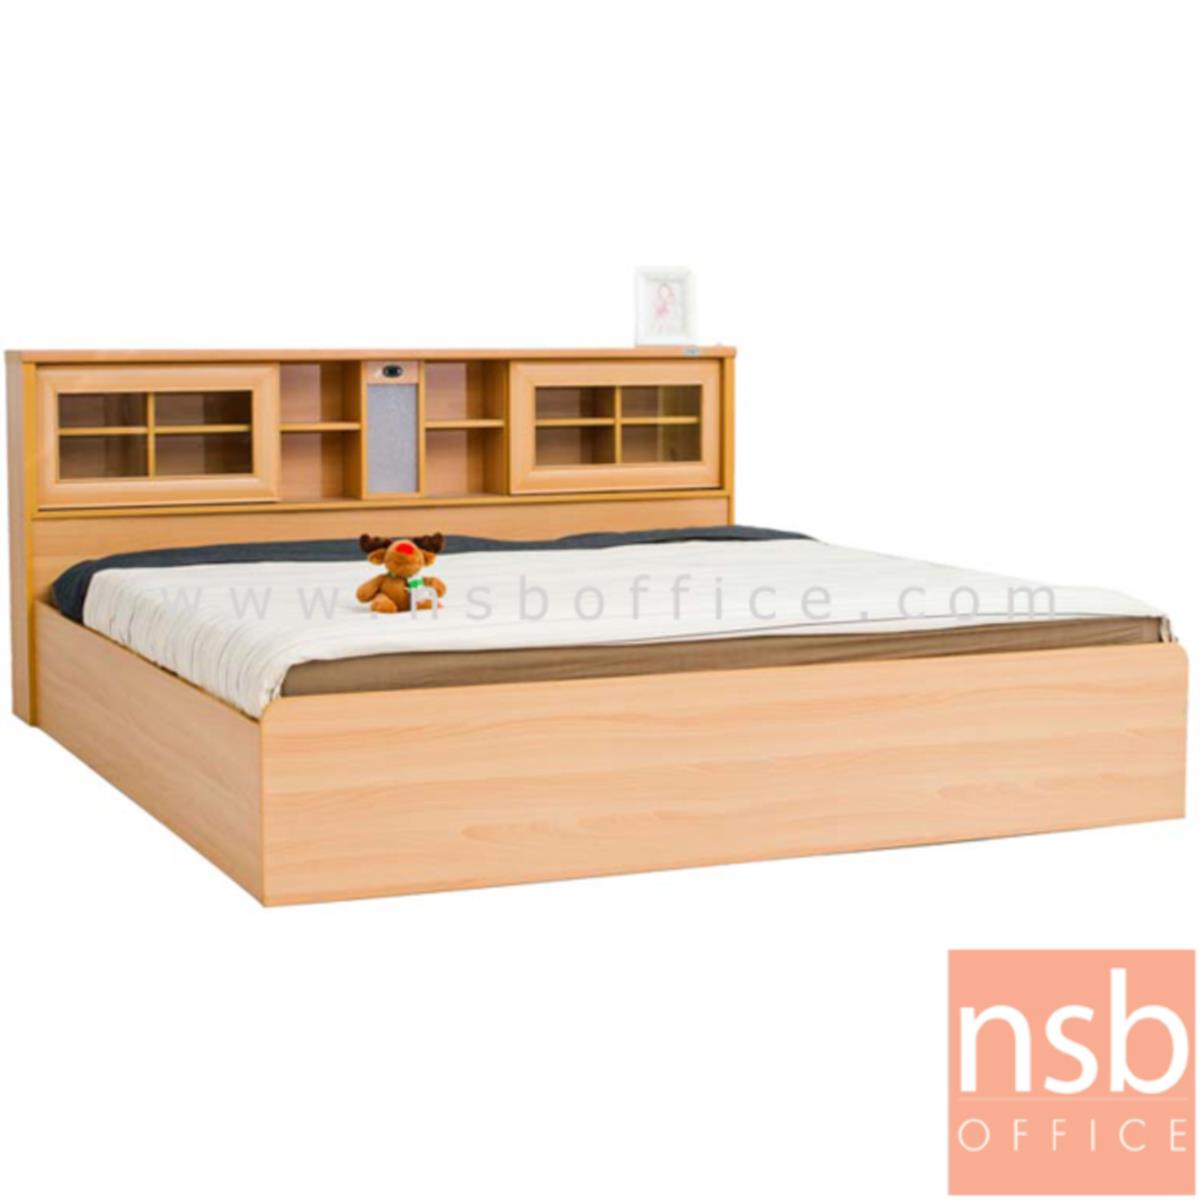 CL30477:เตียงนอนไม้ รุ่น NSB-SARIKA ขนาด 5ฟุต   